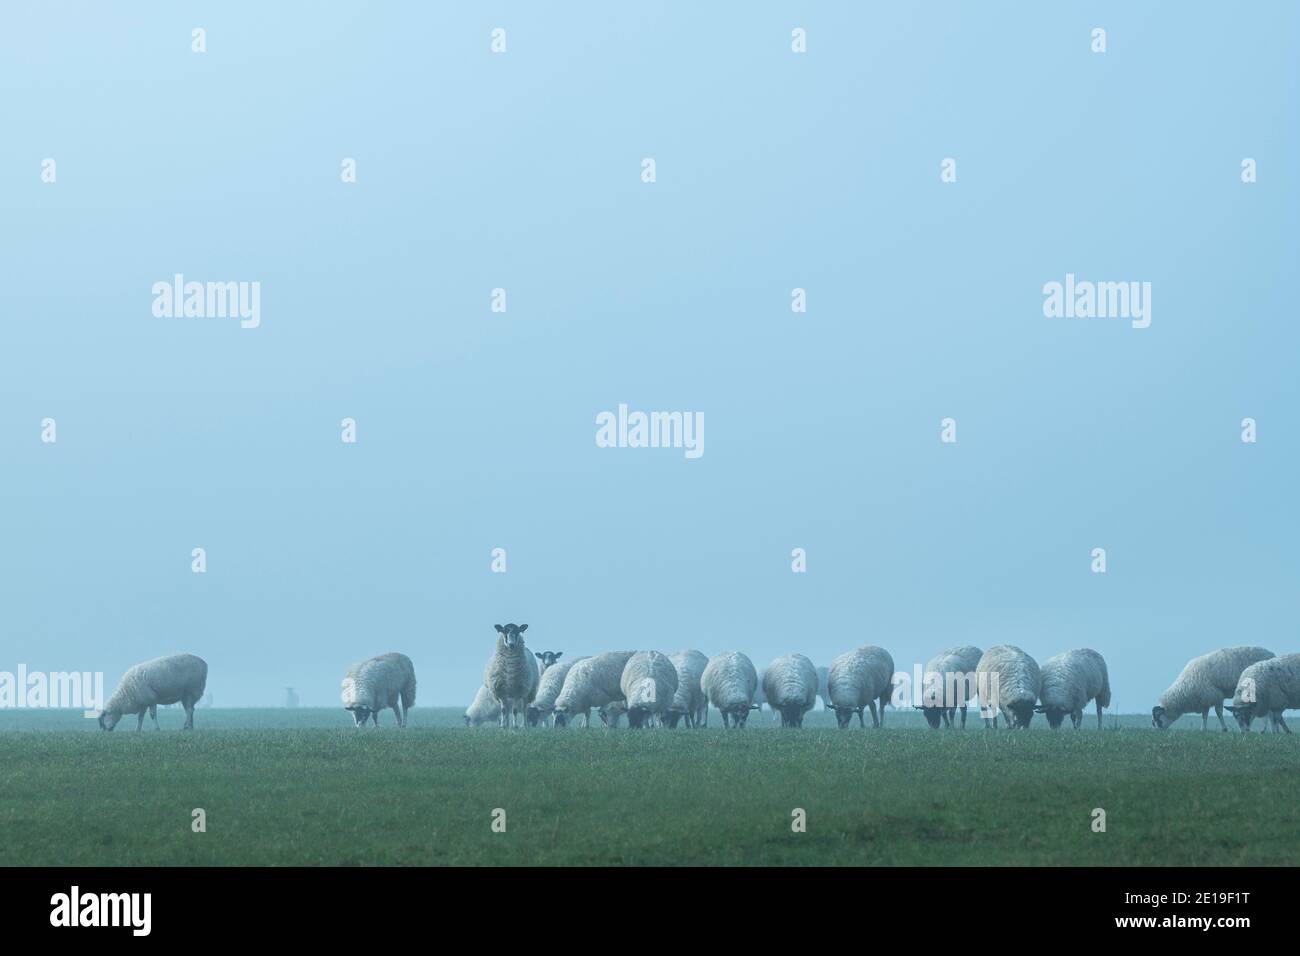 Troupeau de moutons dans un champ vert, animaux de ferme dans la campagne rurale scène sur une ferme dans les terres agricoles dans la brume épaisse et le brouillard, paysage agricole typique anglais paysage, Angleterre, Royaume-Uni Banque D'Images